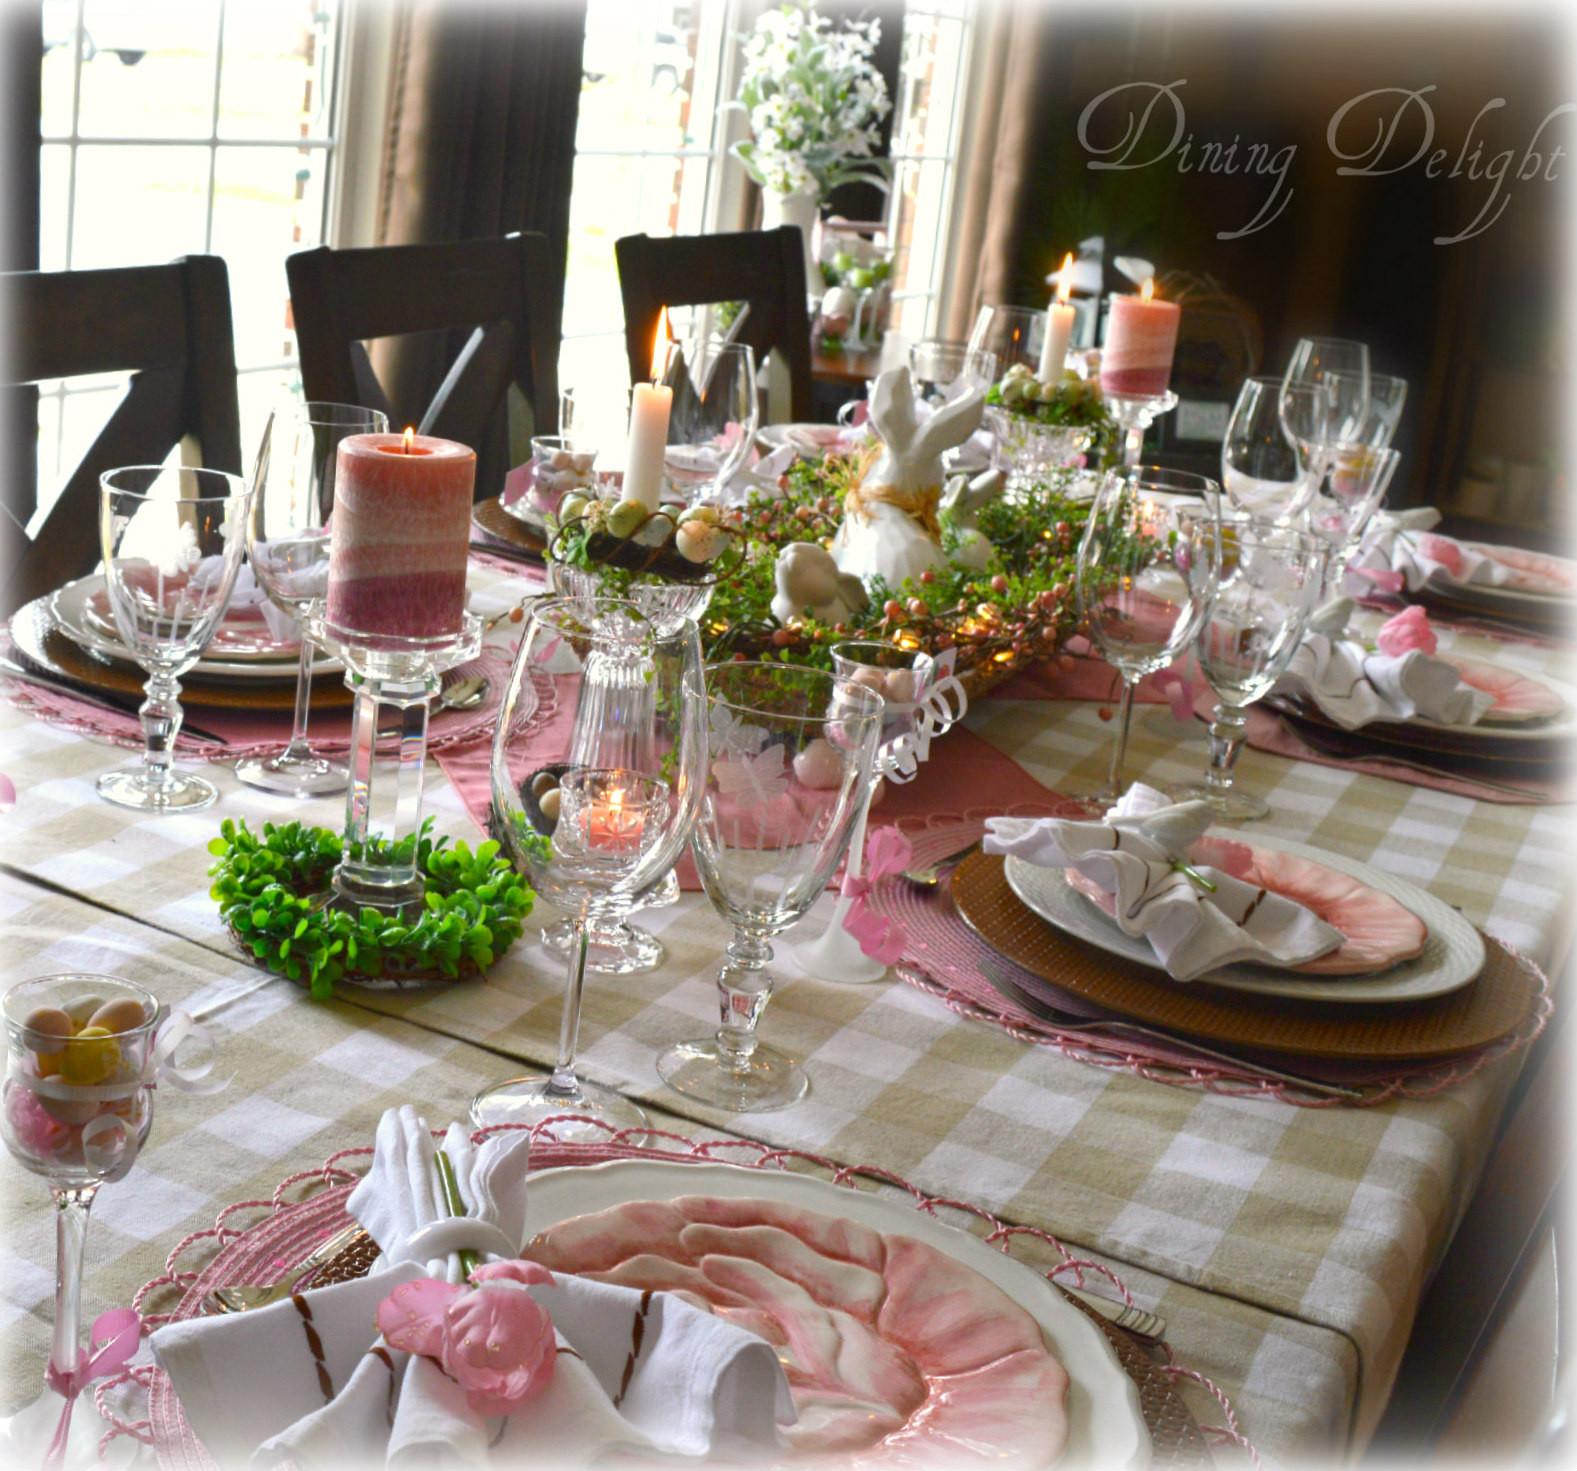 Easter Dinner Table Settings
 Table Setting for Easter Dinner Celebrate & Decorate